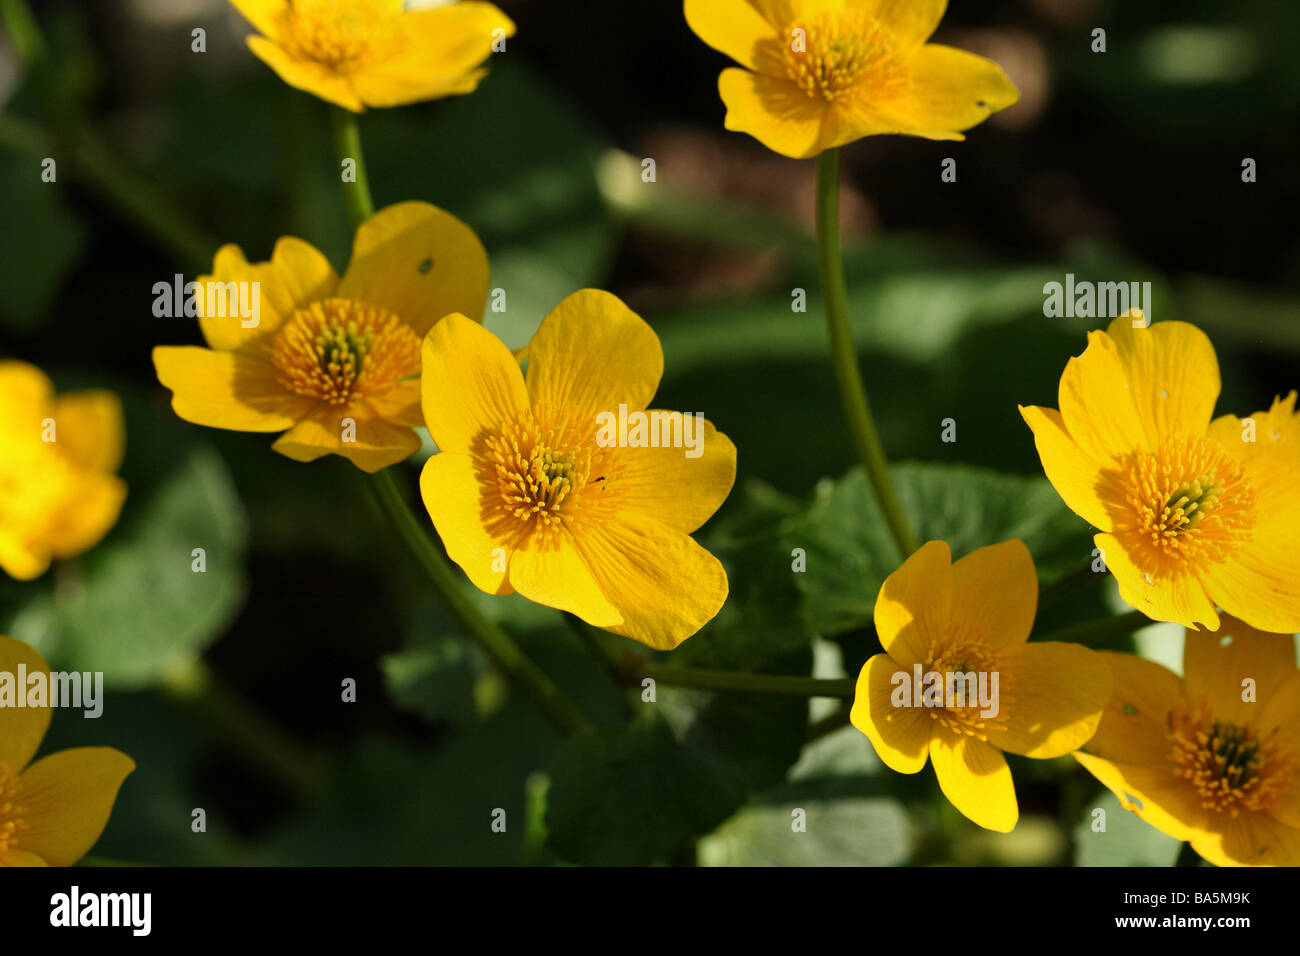 Populage des marais caltha palustris Famille Ranunculaceae close up shot macro structure de fleurs Banque D'Images